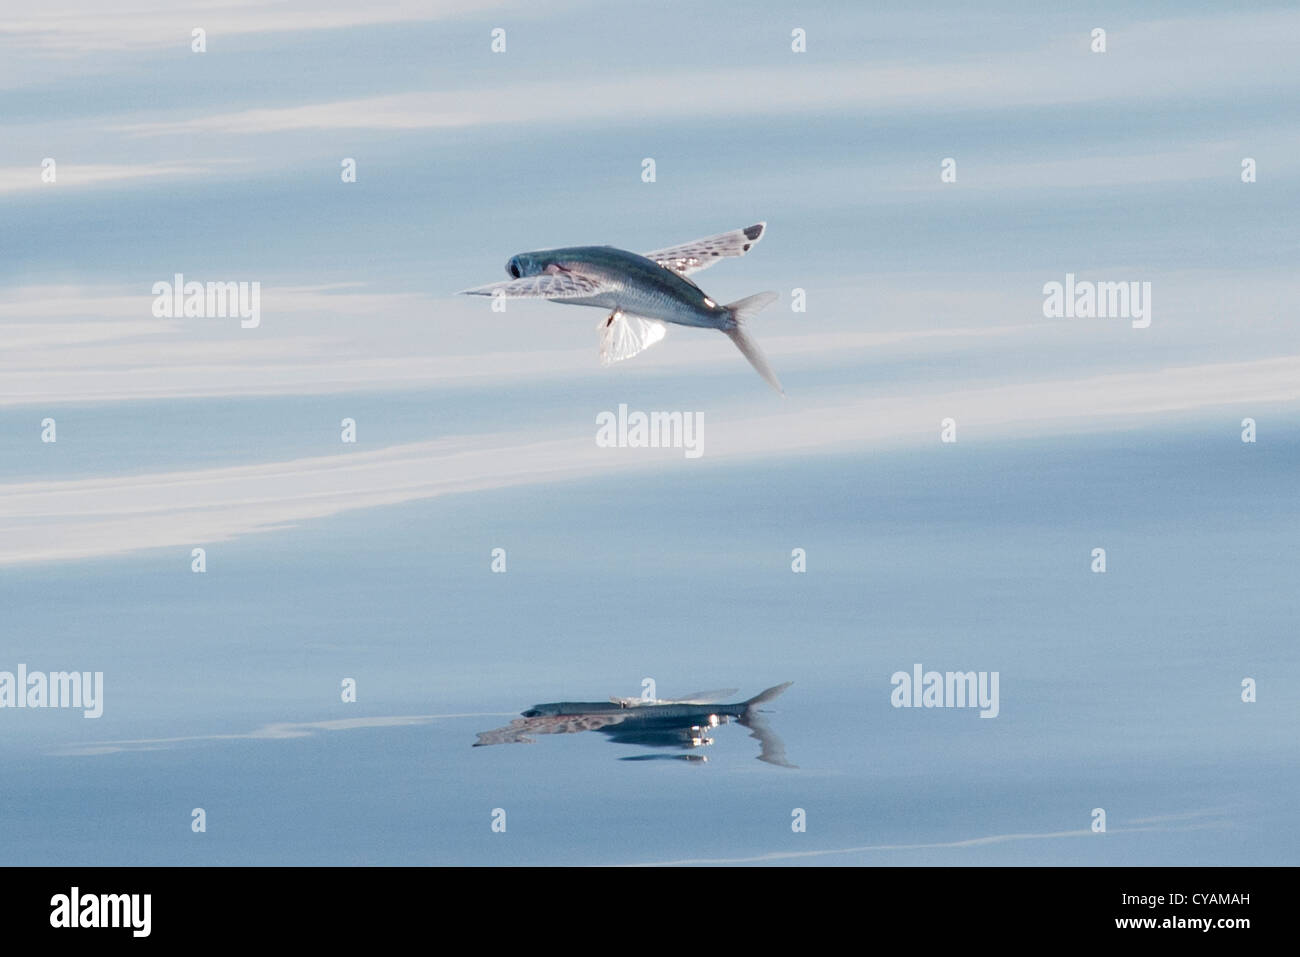 Les espèces de poissons volants (nom scientifique inconnu) avec reflet visible, Maldives, océan Indien. Banque D'Images